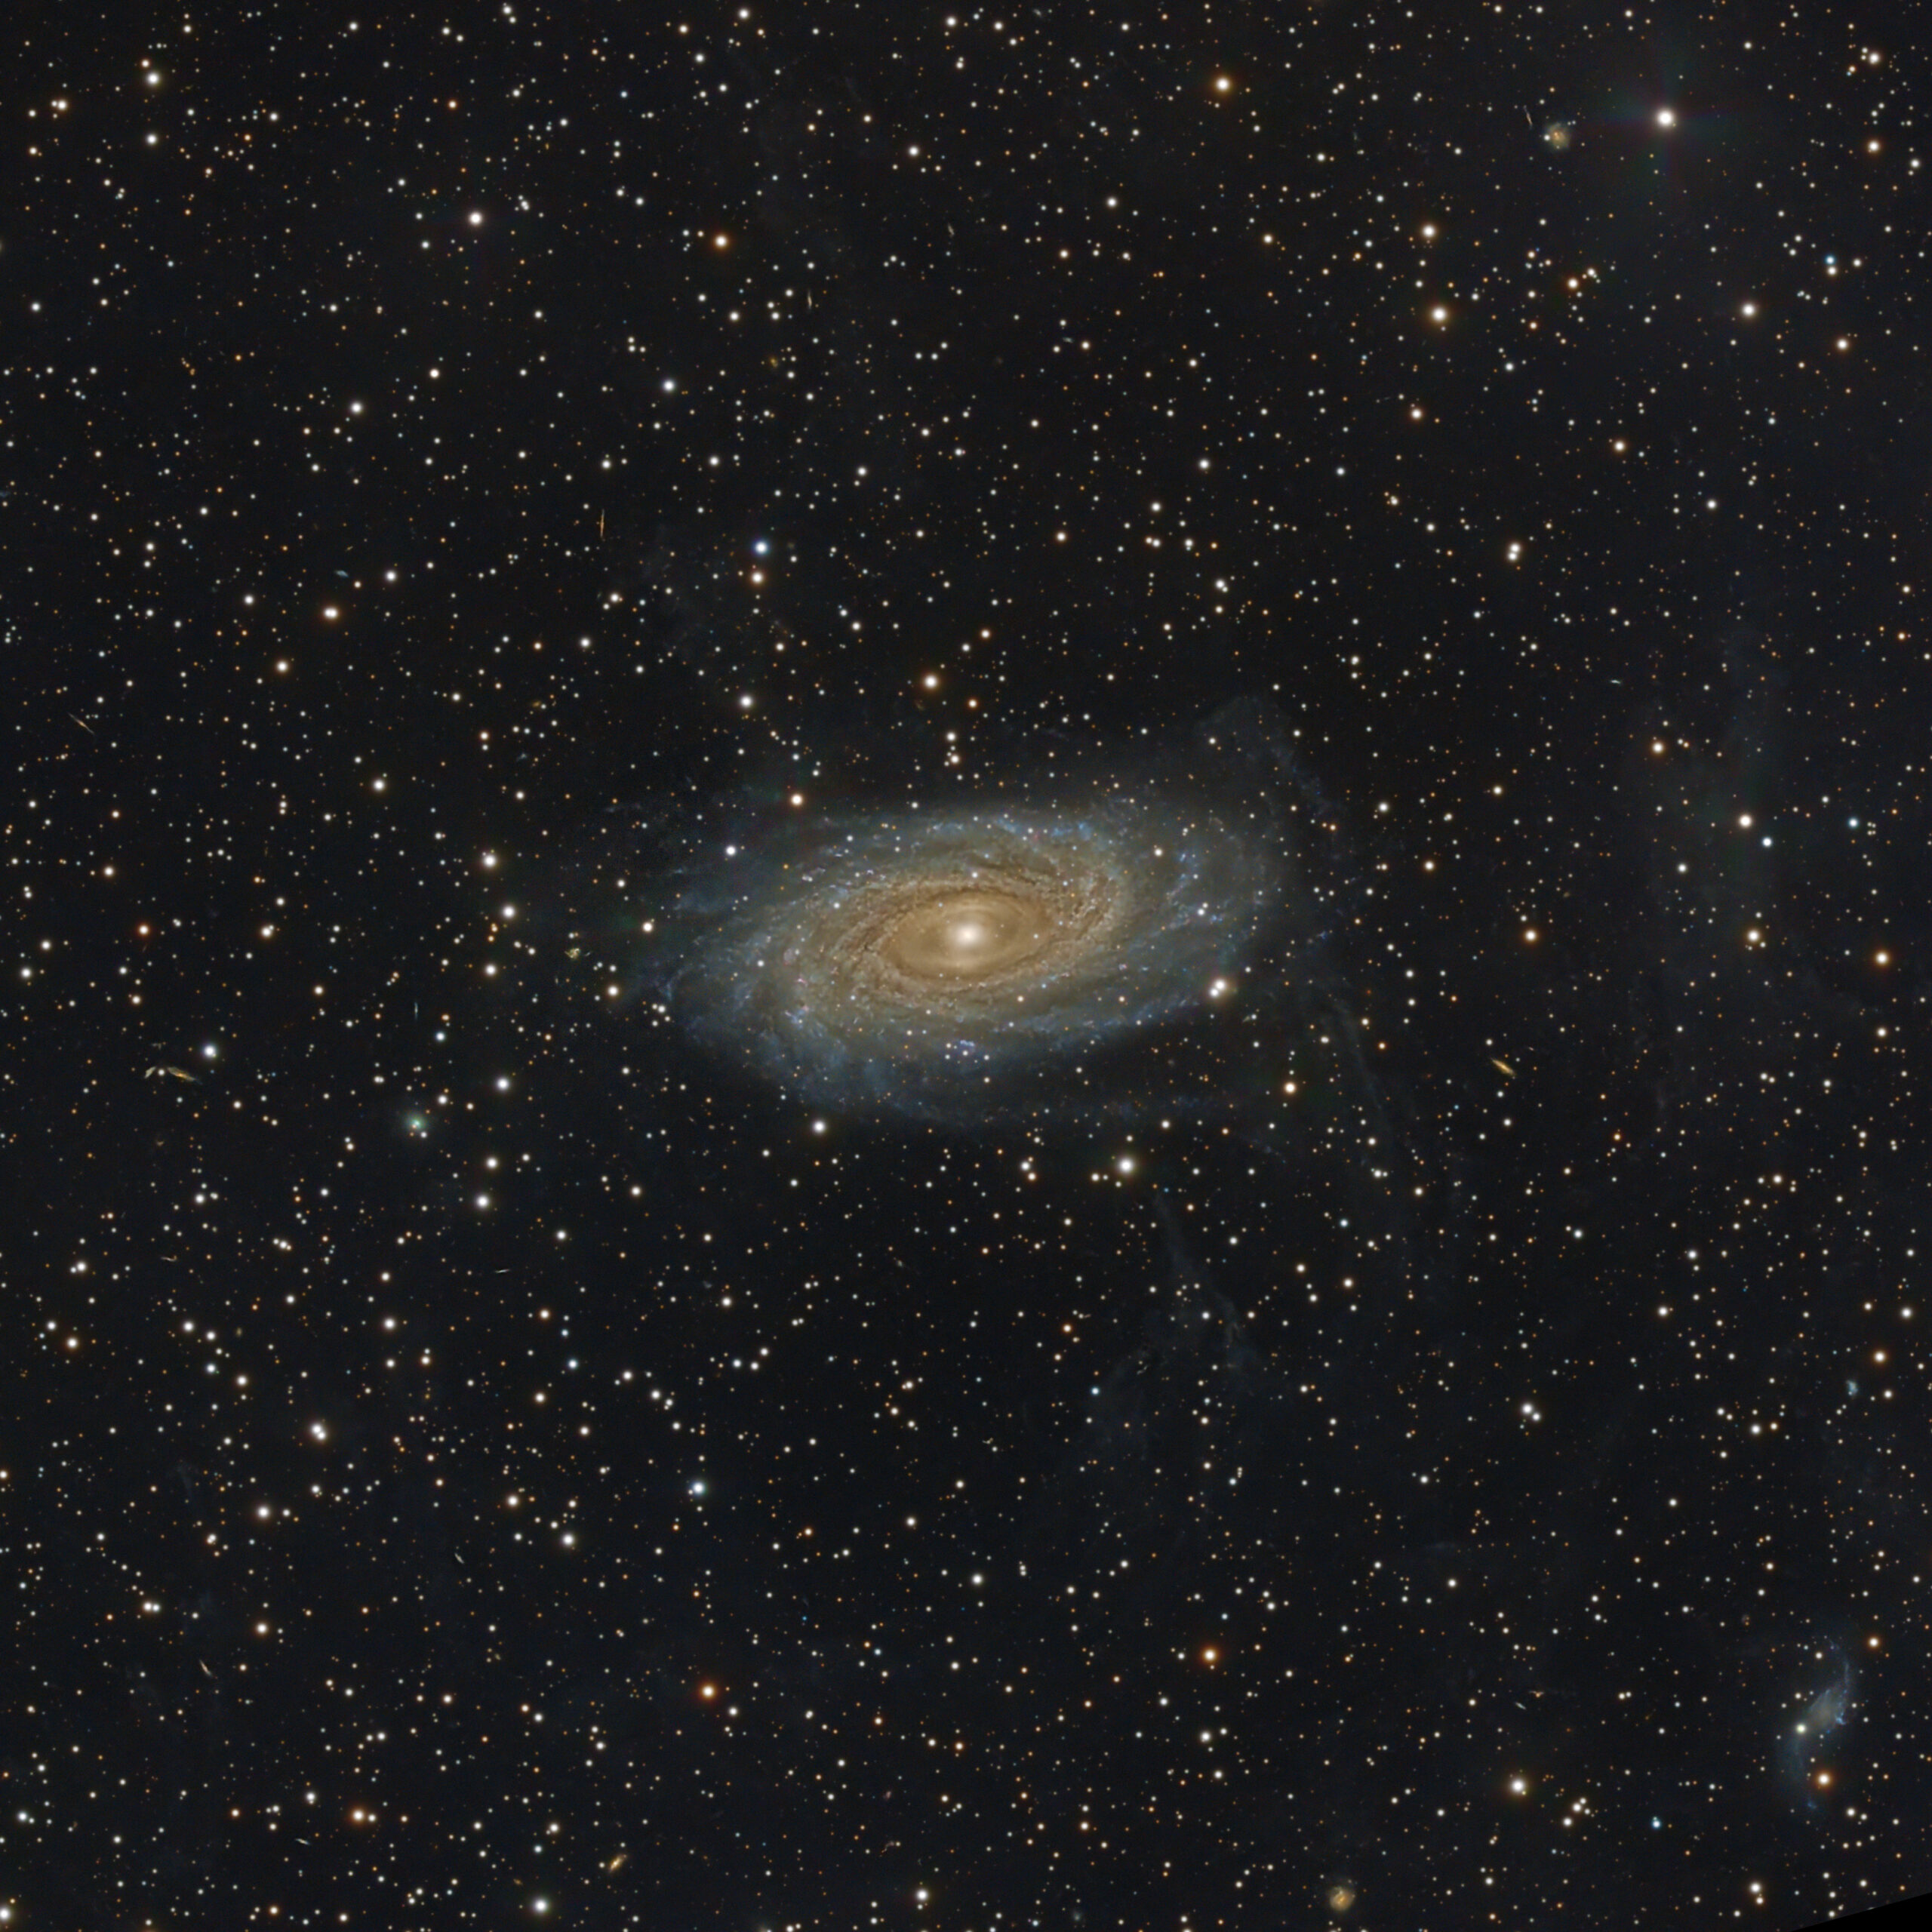 NGC 5688